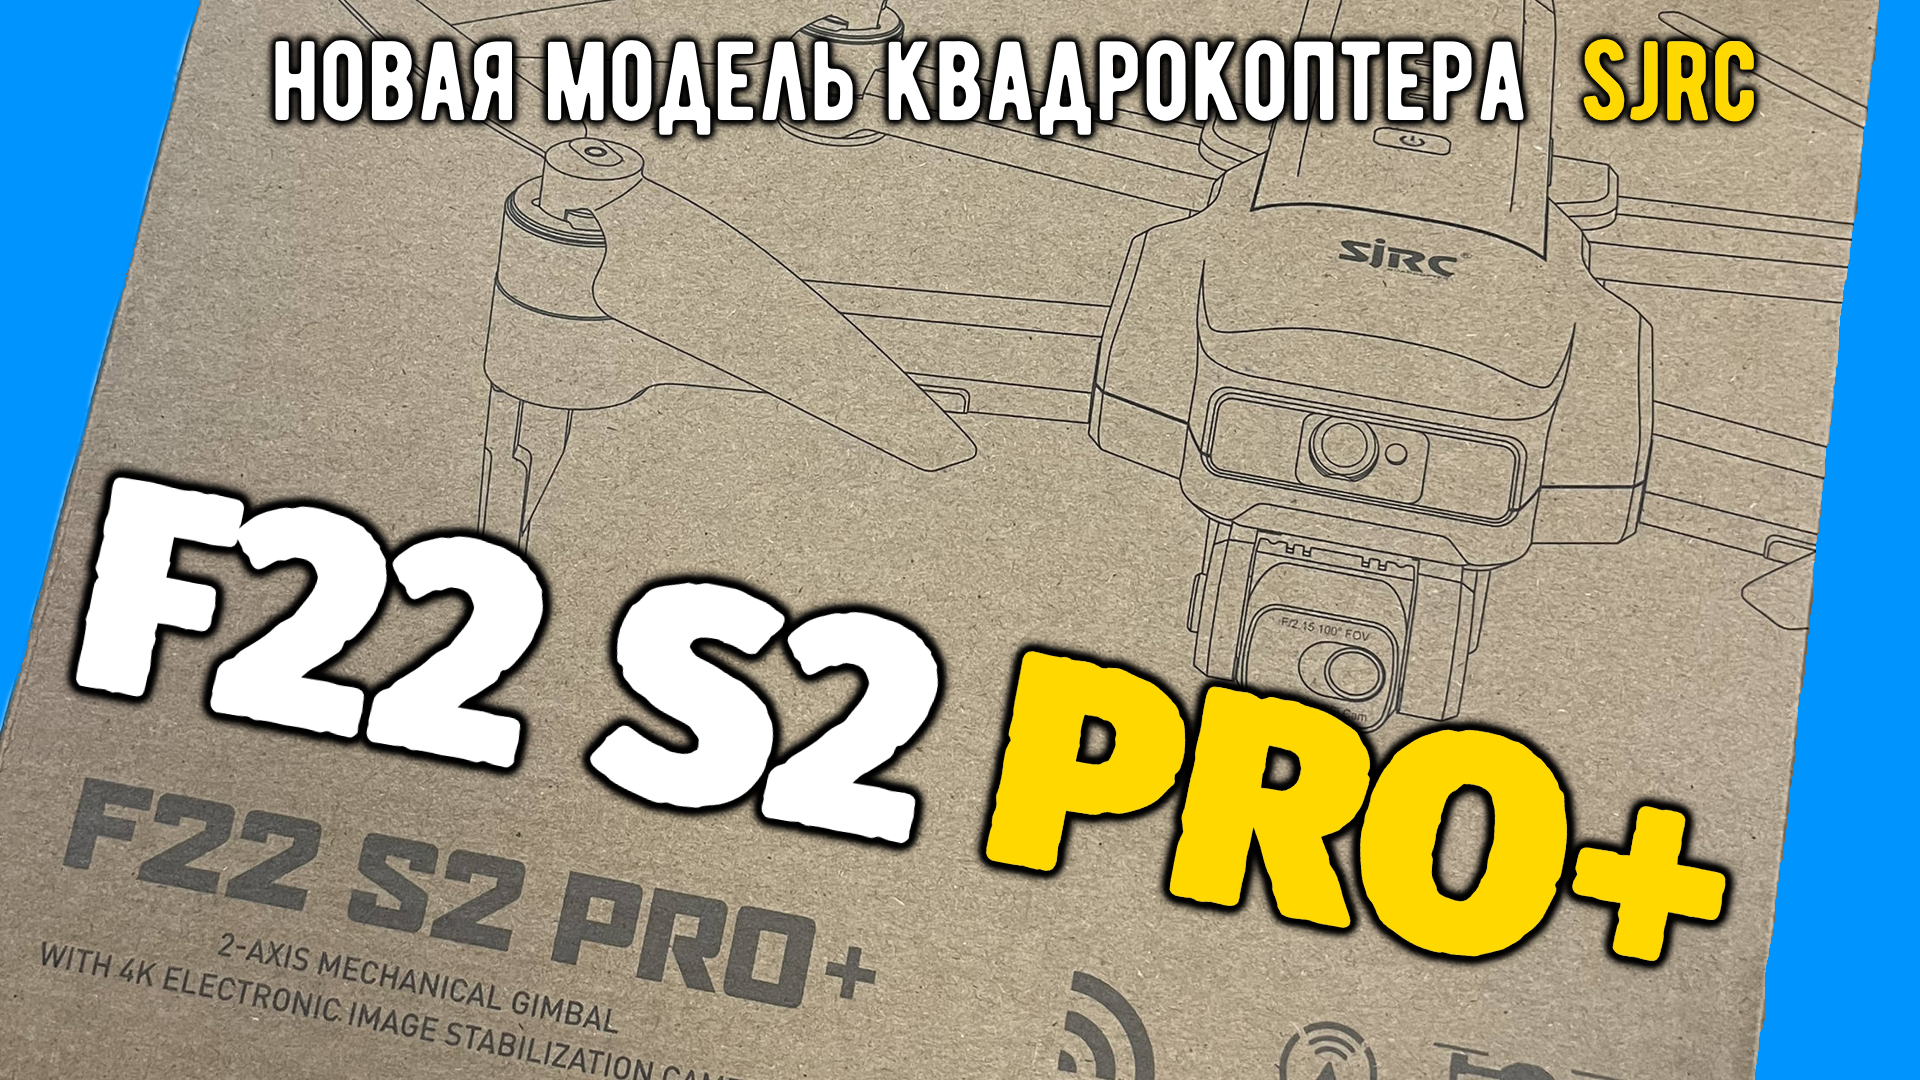 Новый дрон SJRC F22 S2 PRO+